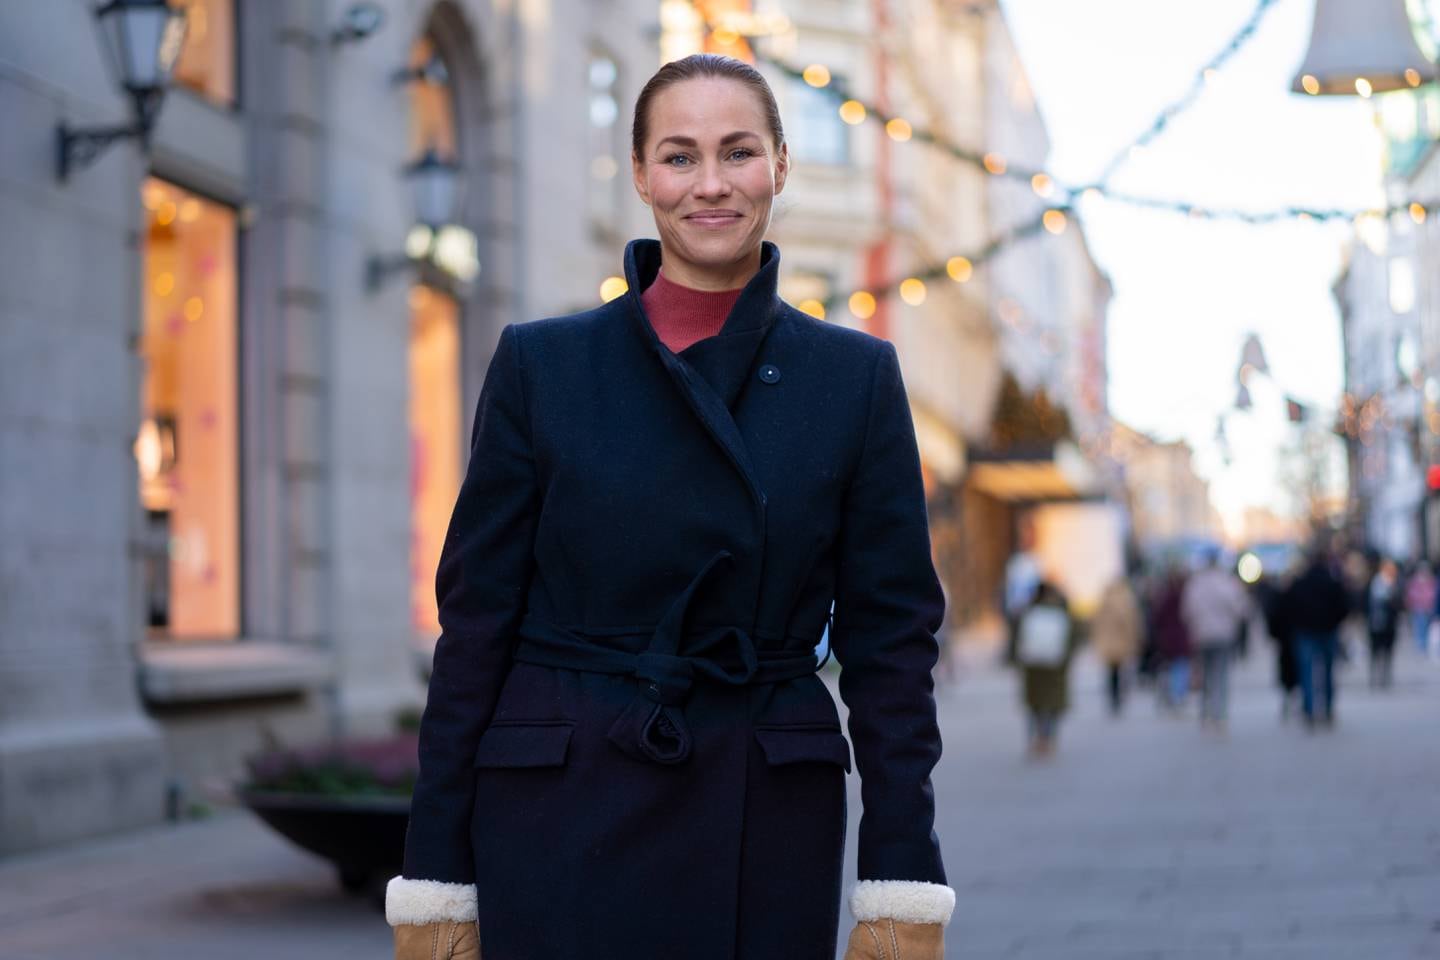 Forbrukerøkonom Cecilie Tvetenstrand i Storebrand gir råd til årets julehandel og advarer mot kredittkortfeller